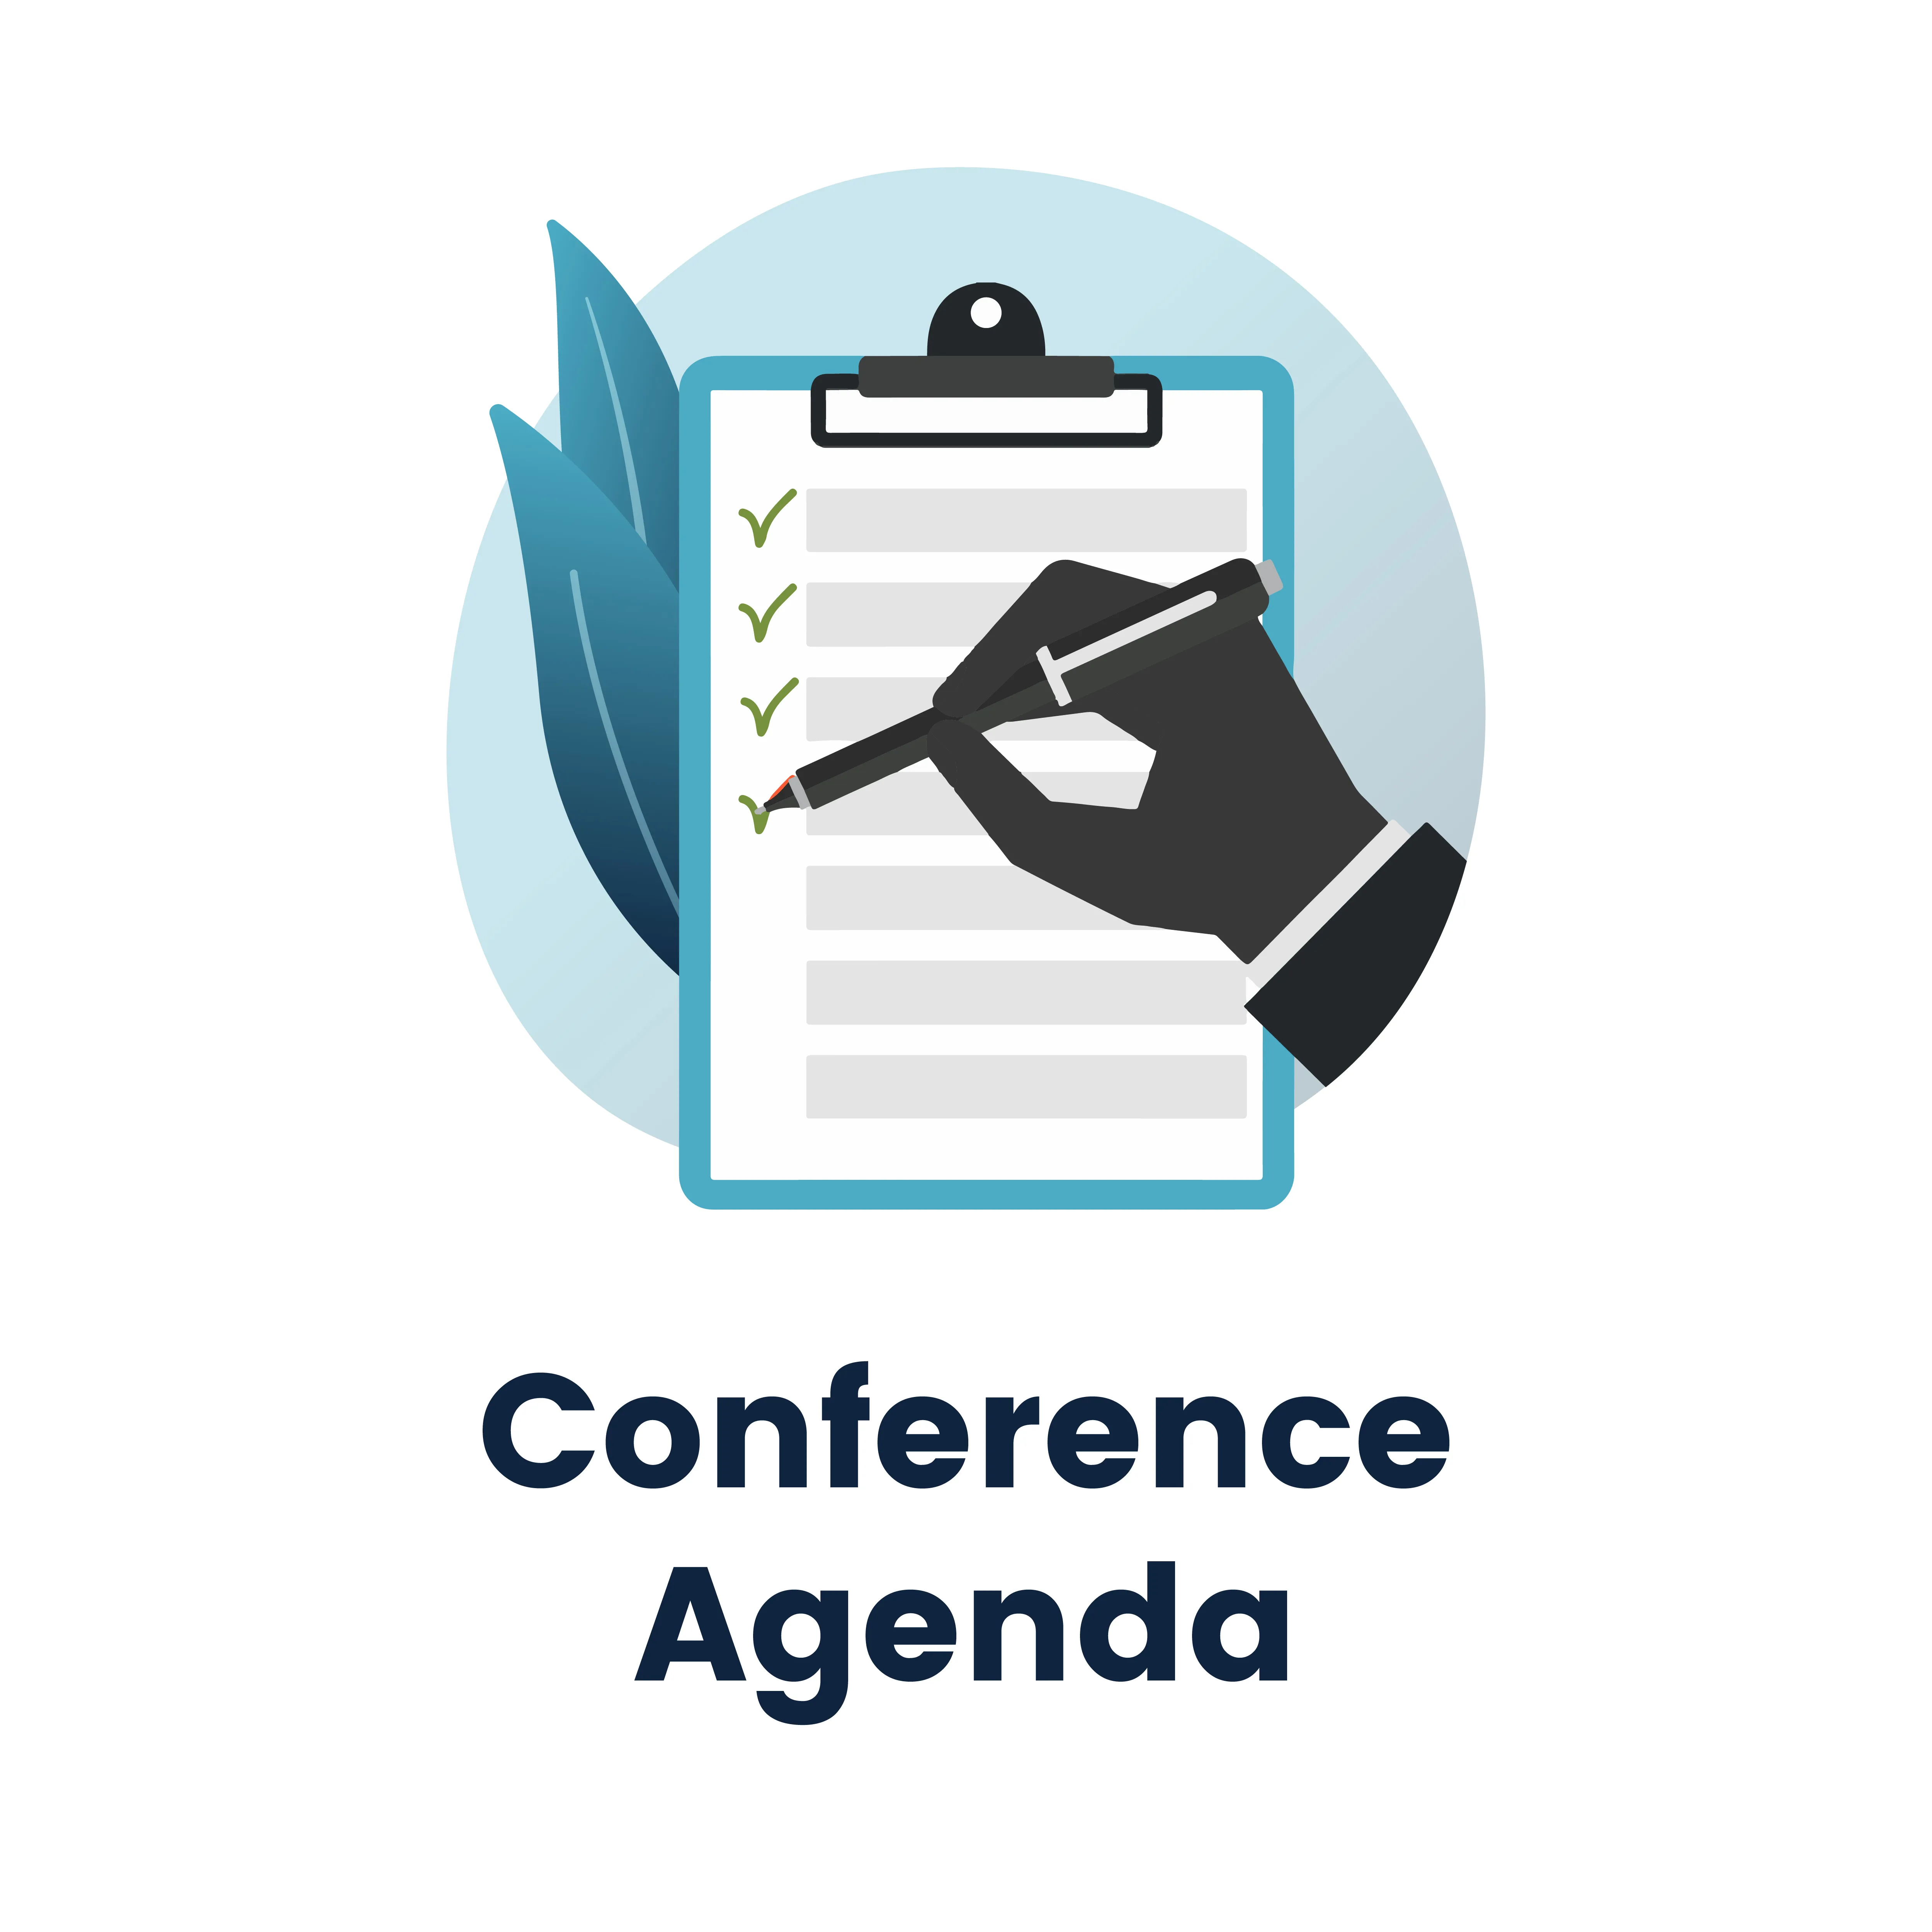 Conference Event Agenda